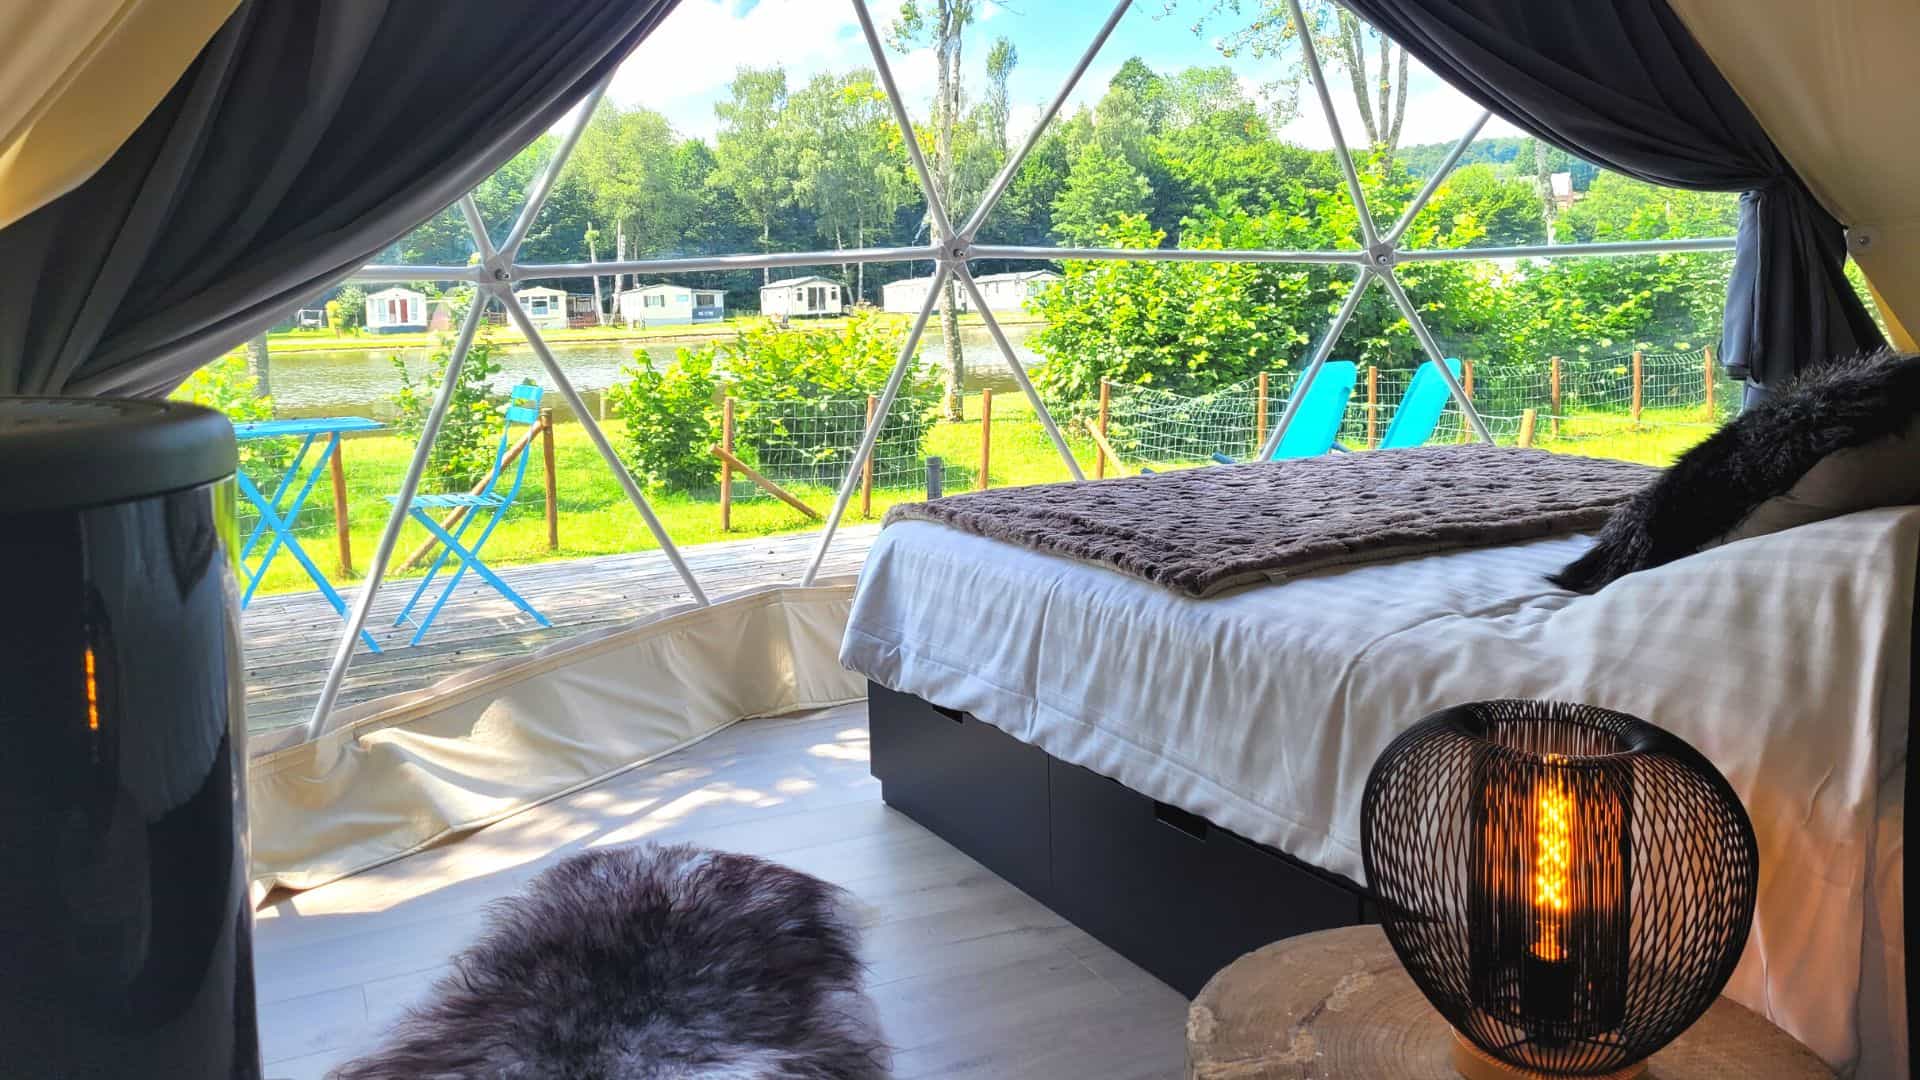 Ongewone accommodatie: slapen in een bubbel in de Ardennen. Camping België.